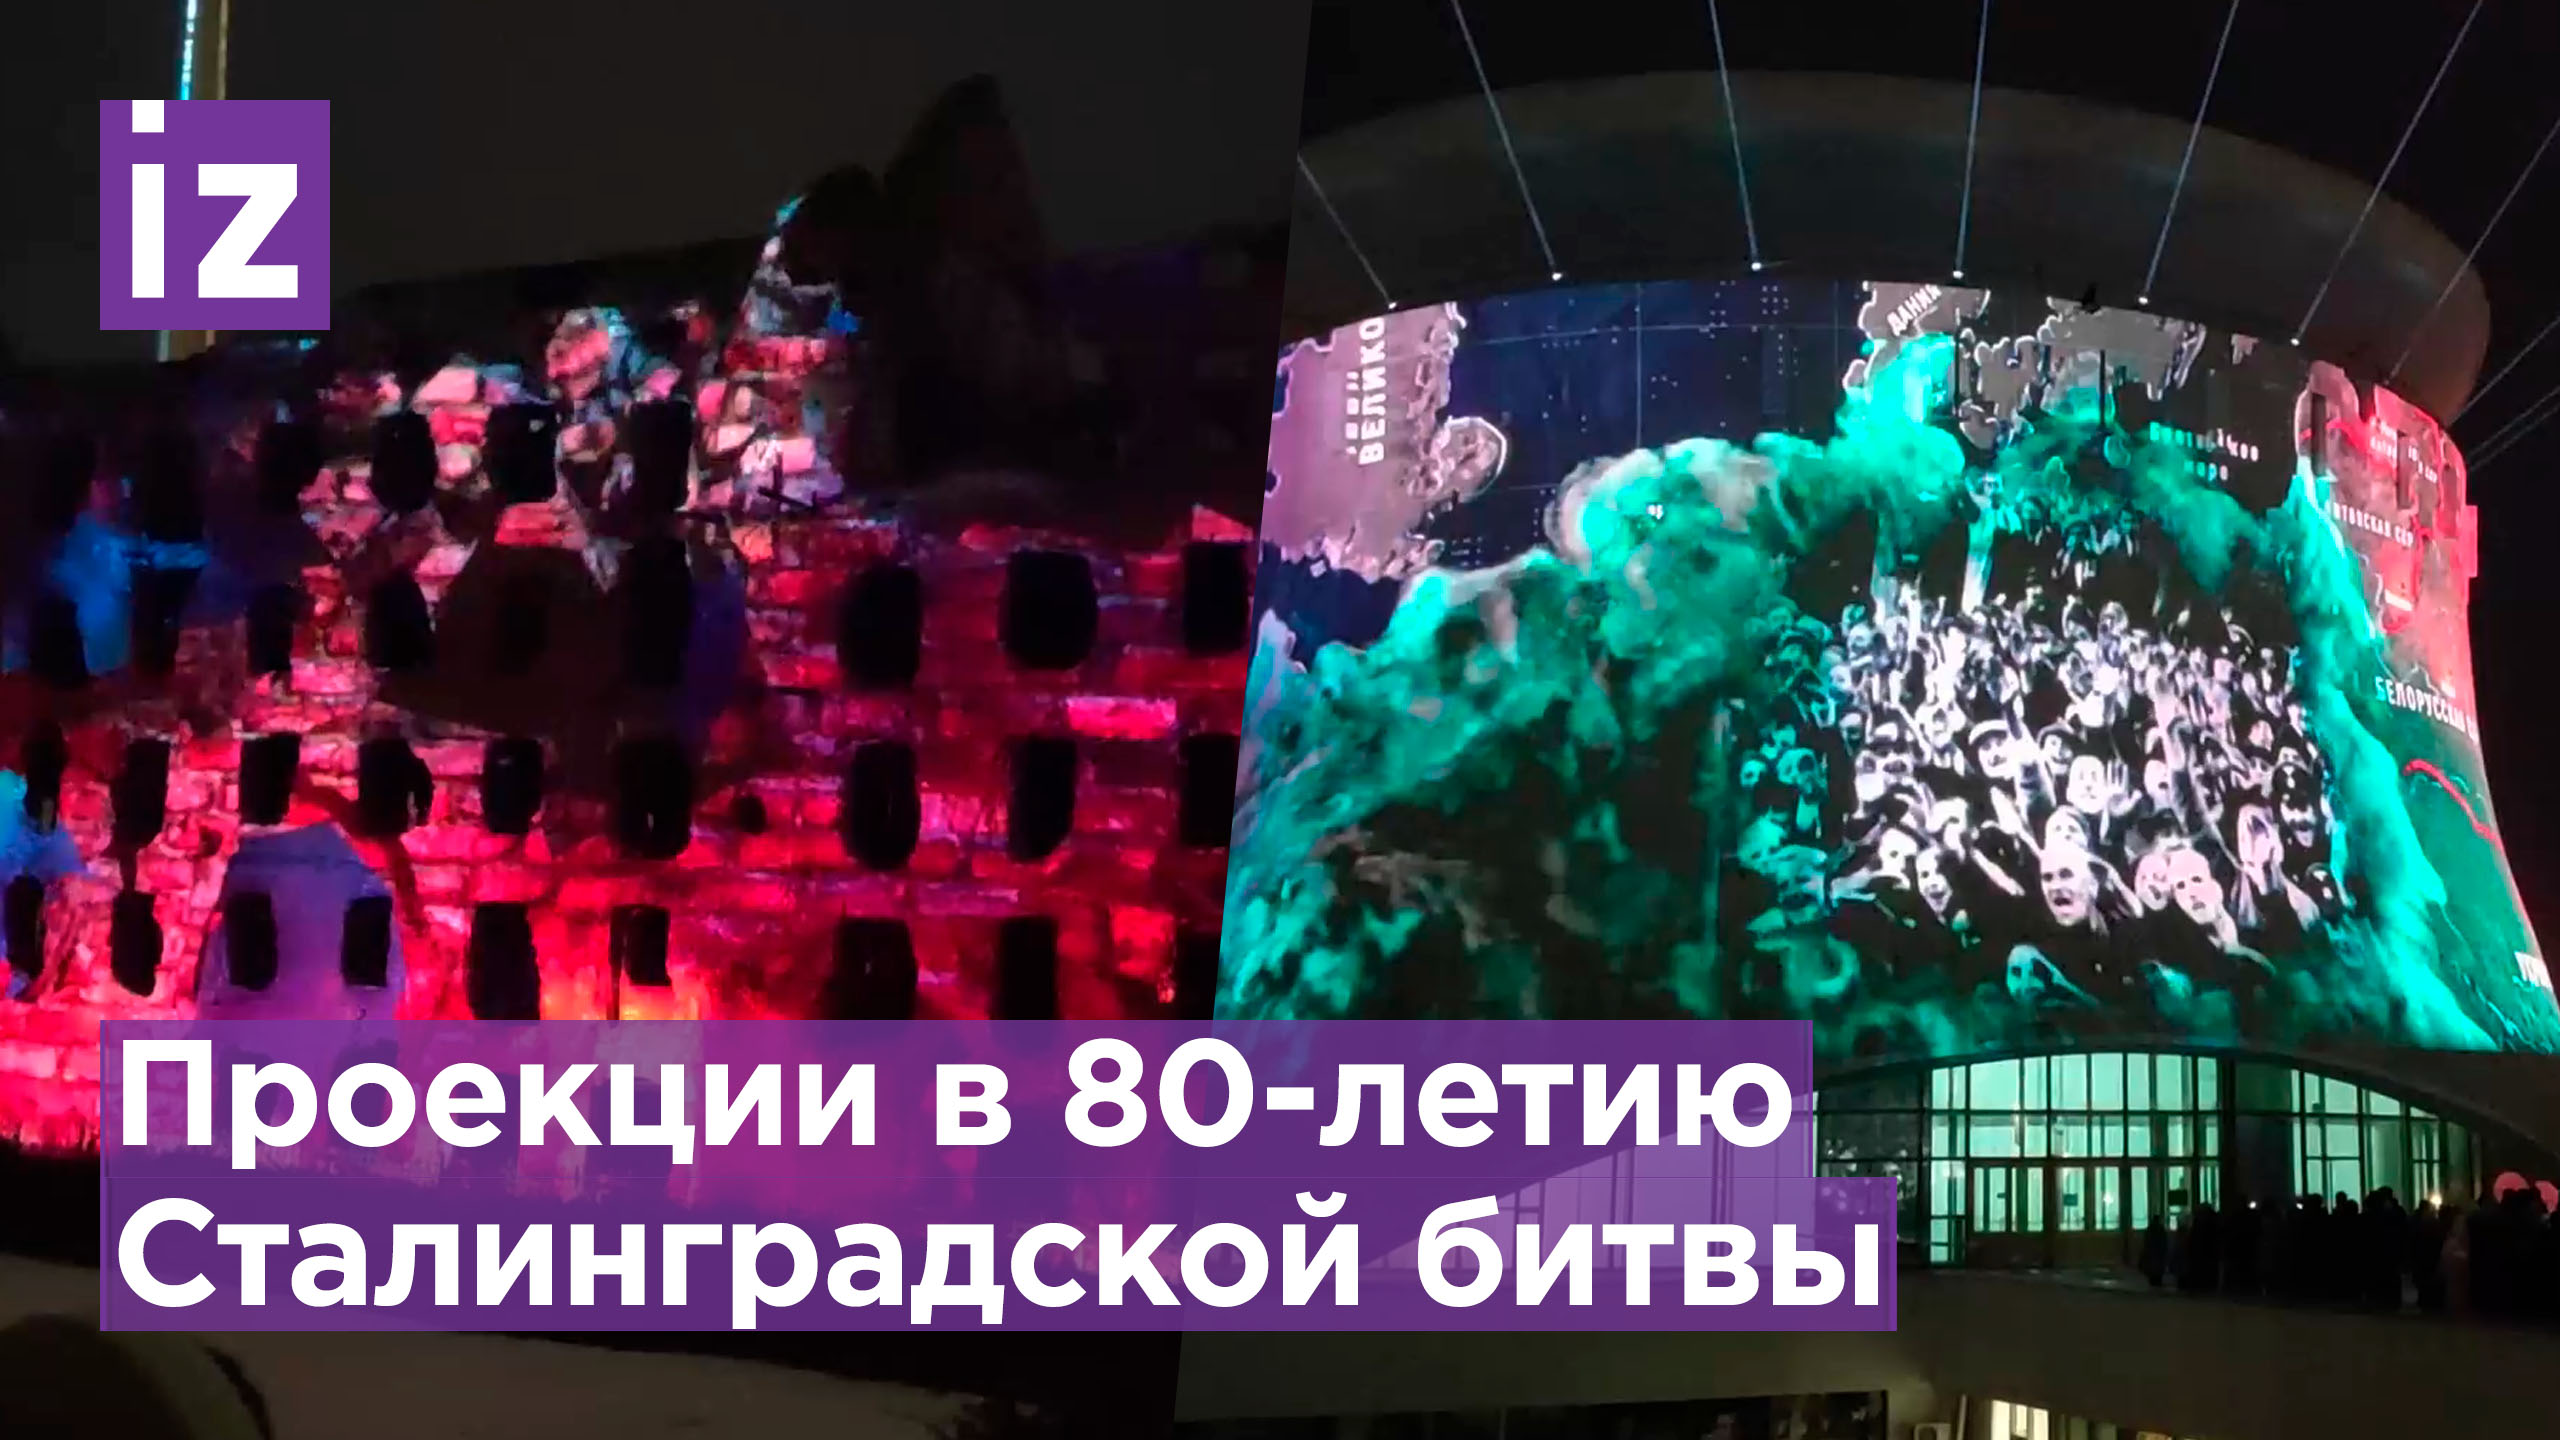 Проекции, созданные к 80-летию Сталинградской битвы транслируют на фасадах исторических объектов